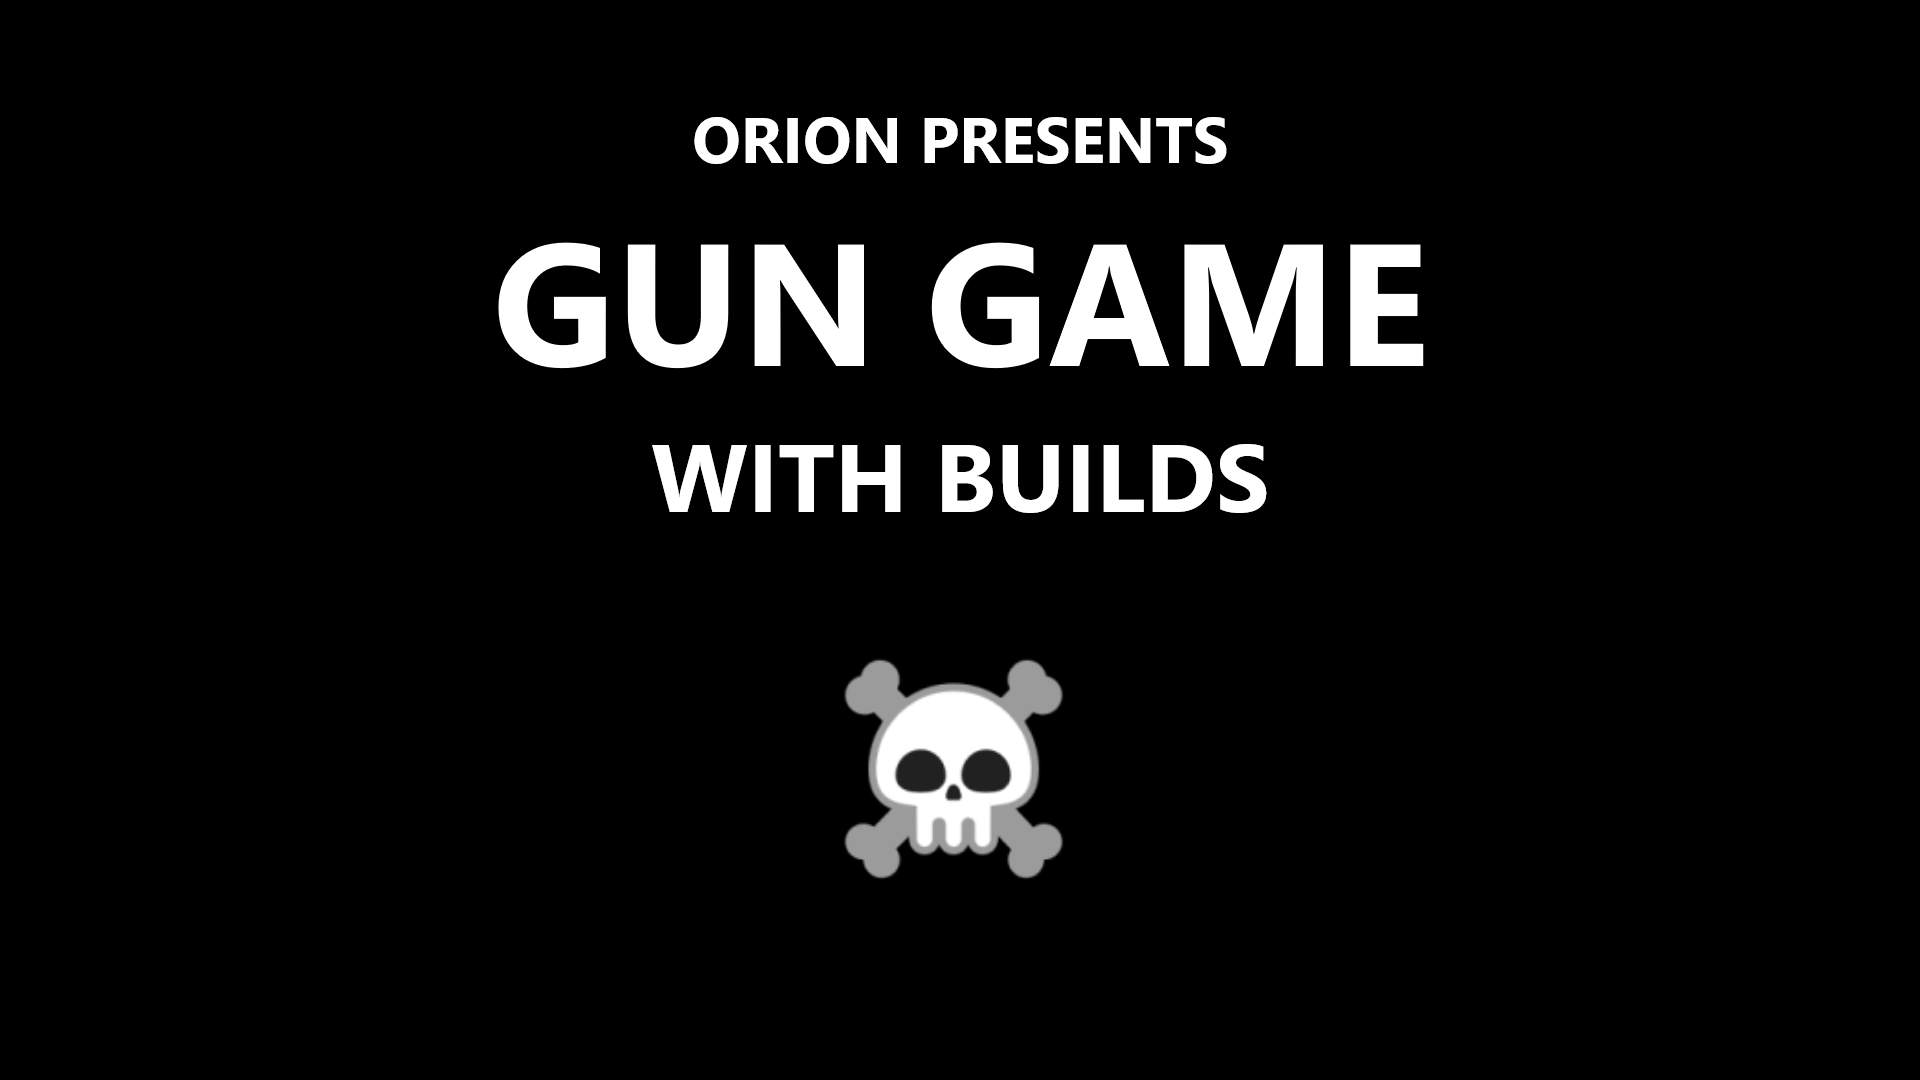 Orion's Gun Game